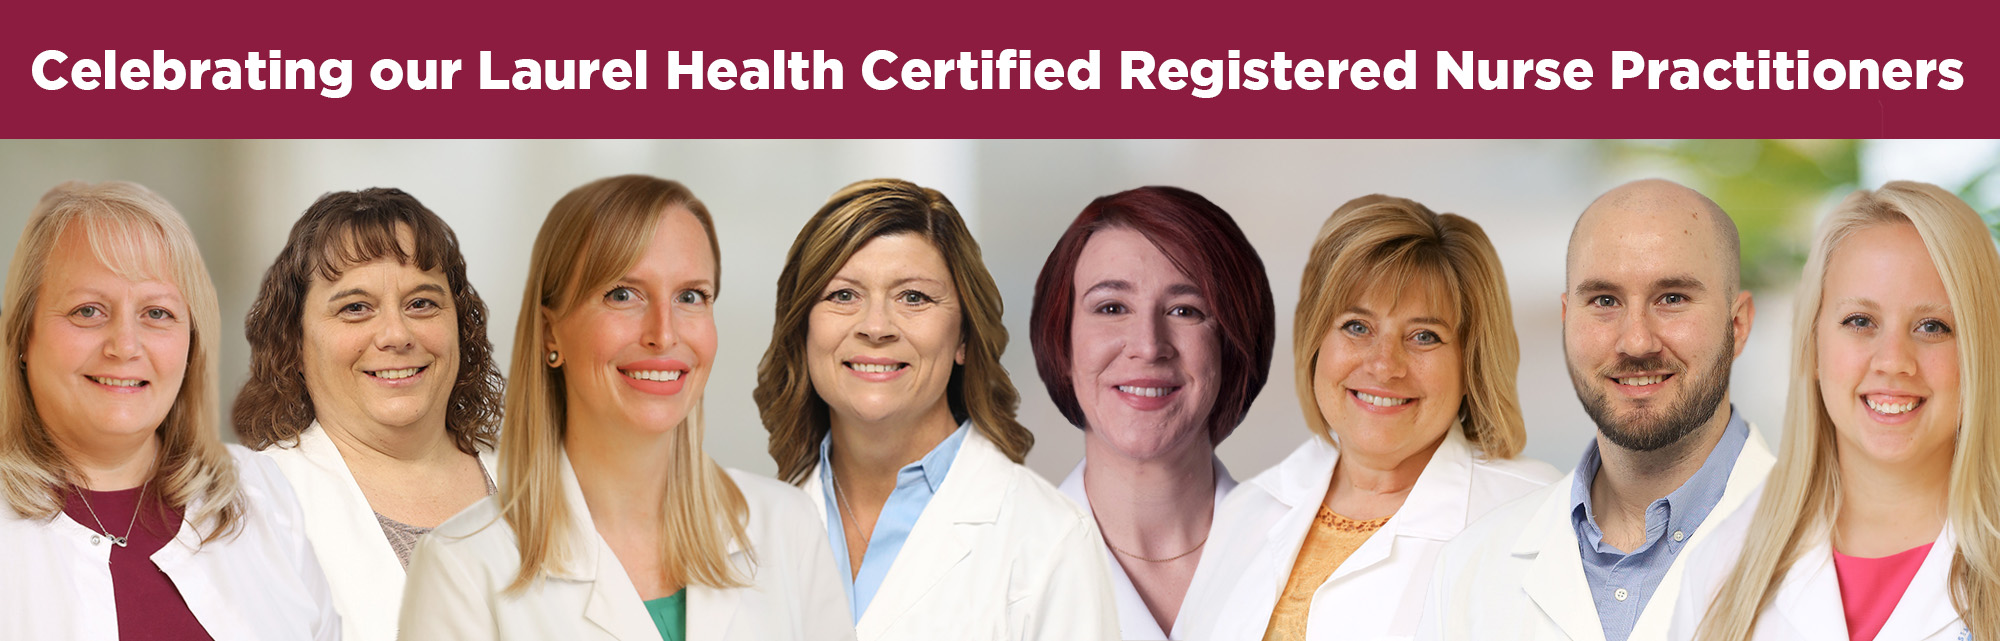 Laurel Health Certified Registered Nurse Practitioner Team (CRNP)